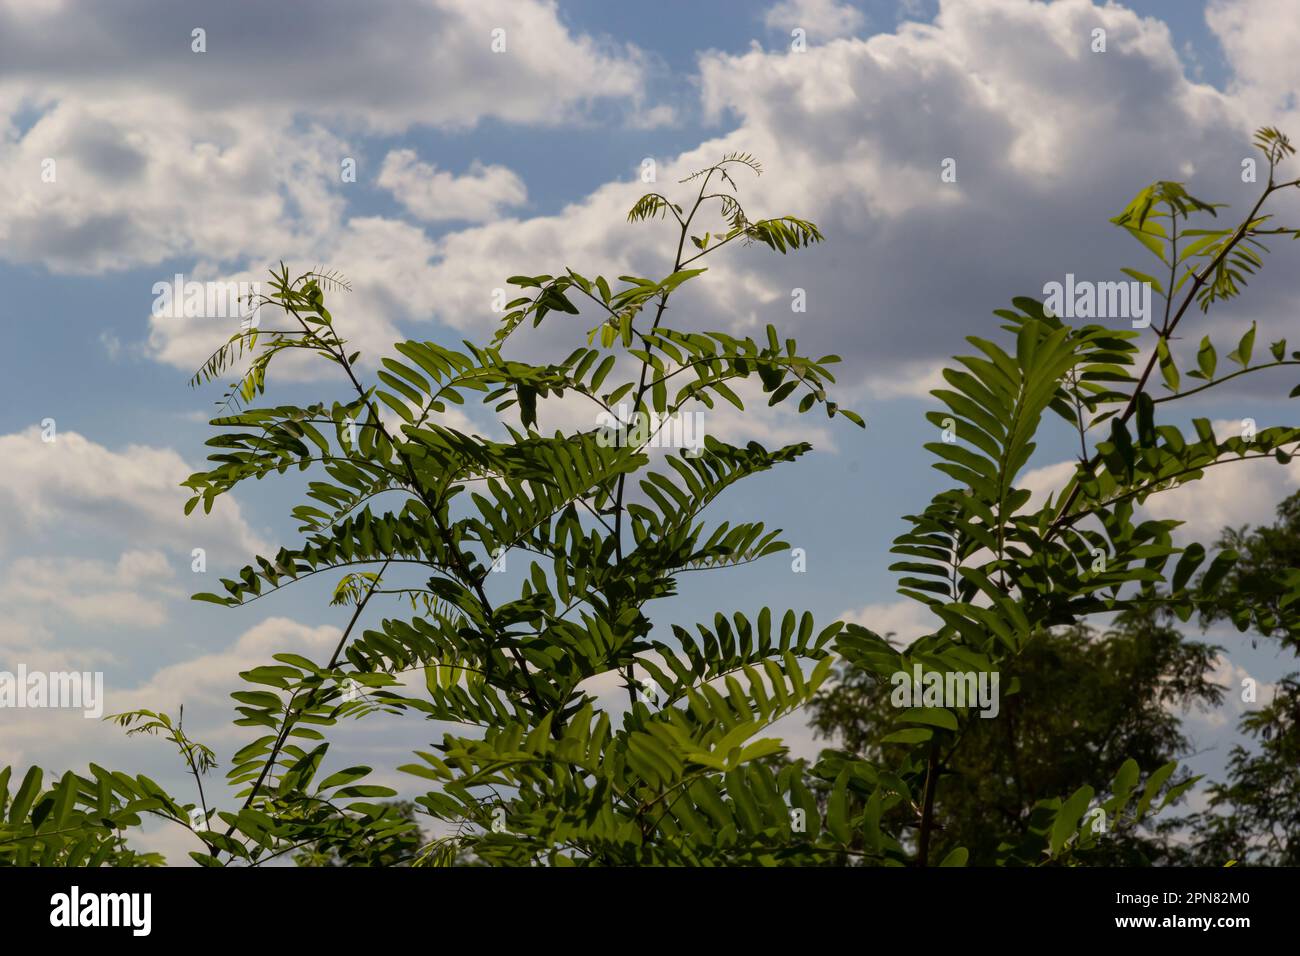 Japanische Akazien oder rosafarbener Seidenbaum der Familie Fabaceae. Zarte grüne Blätter auf dem Zweig des persischen Seidenbaums Albizia julibrissin gegen verschwommenen Rücken Stockfoto